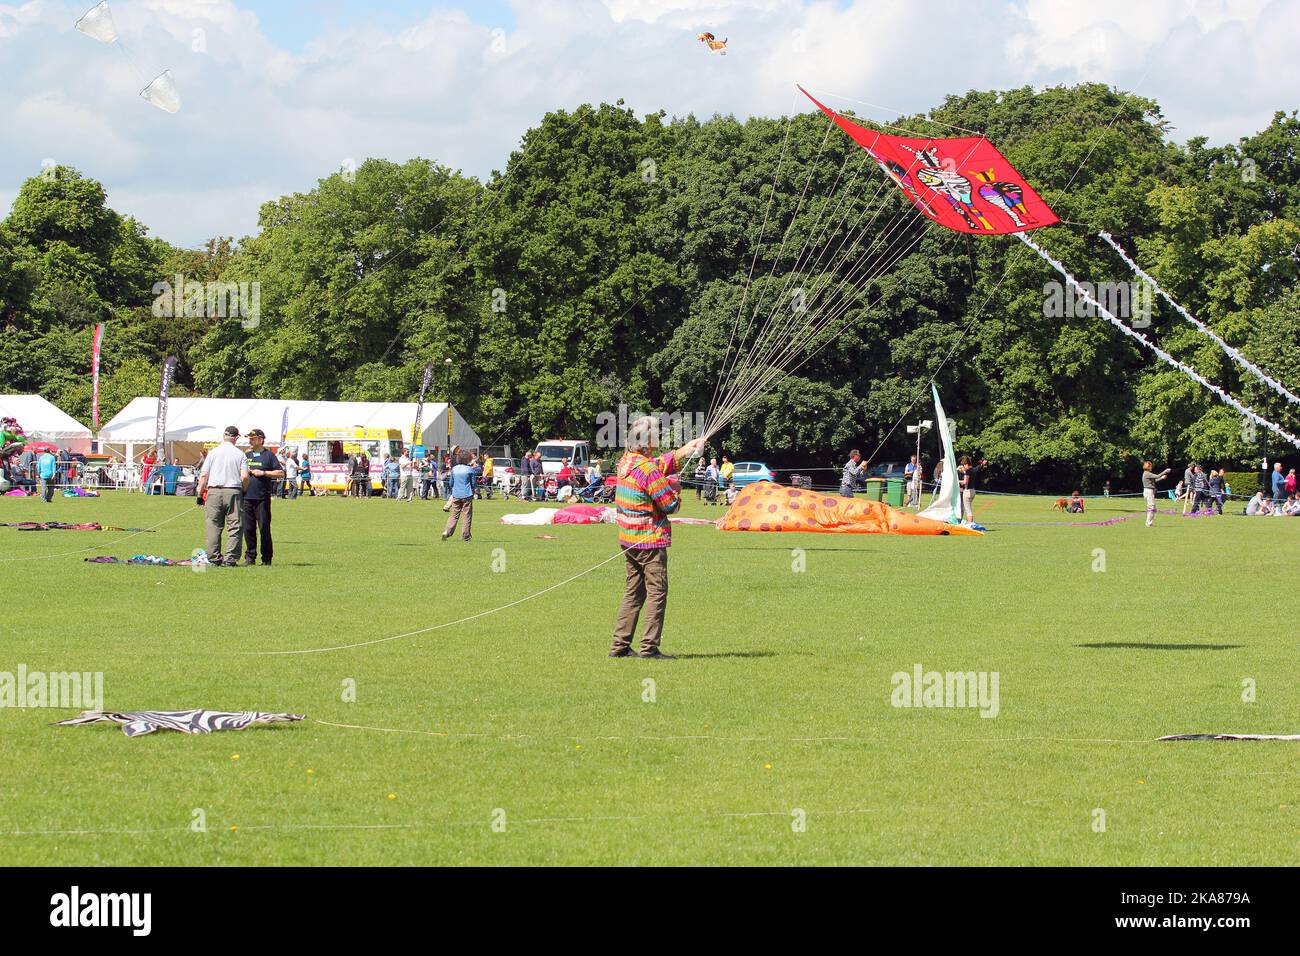 Drachen fliegen beim jährlichen Drachenfest entlang der Uferpromenade in Bedford, Großbritannien. Drachenflieger aus der ganzen Welt nehmen an dieser jährlichen Veranstaltung Teil. Stockfoto